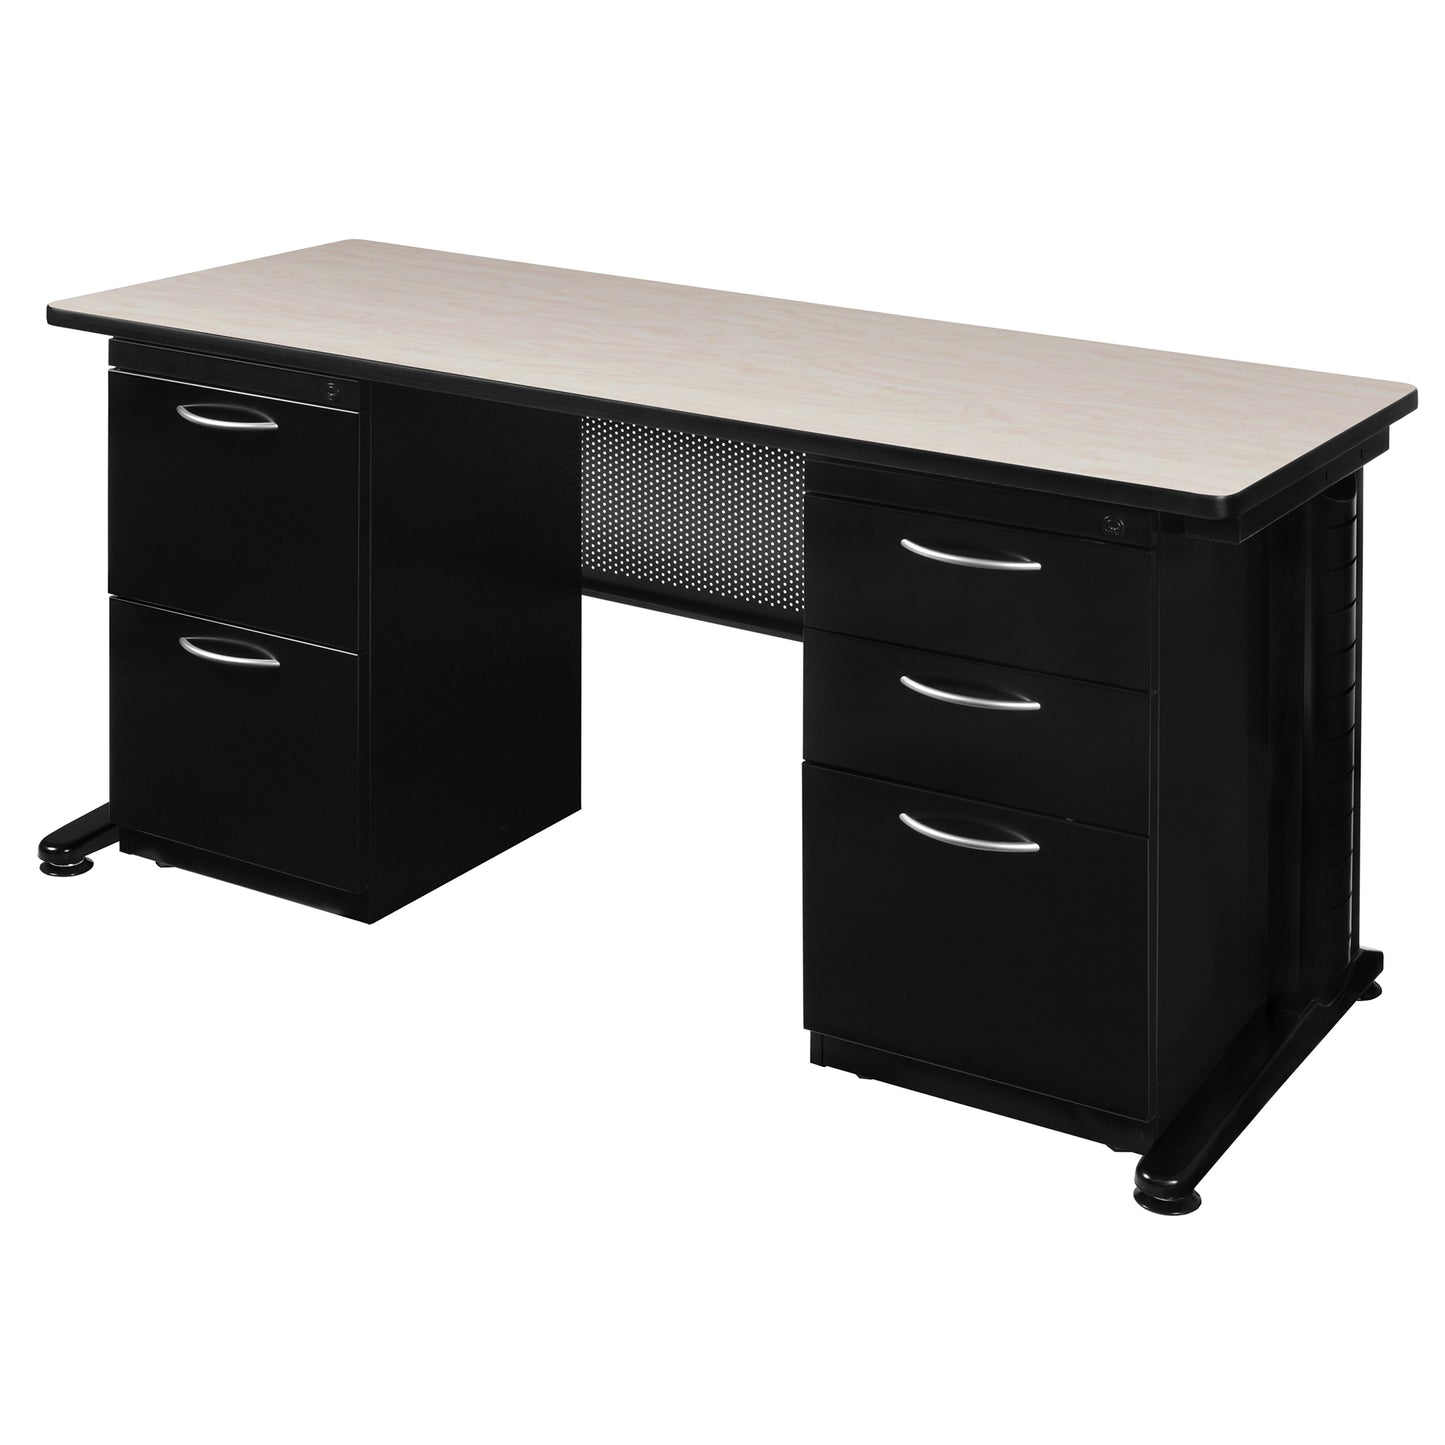 Regency Fusion 66" x 24" Teachers Desk with Double Pedestal Drawer Unit